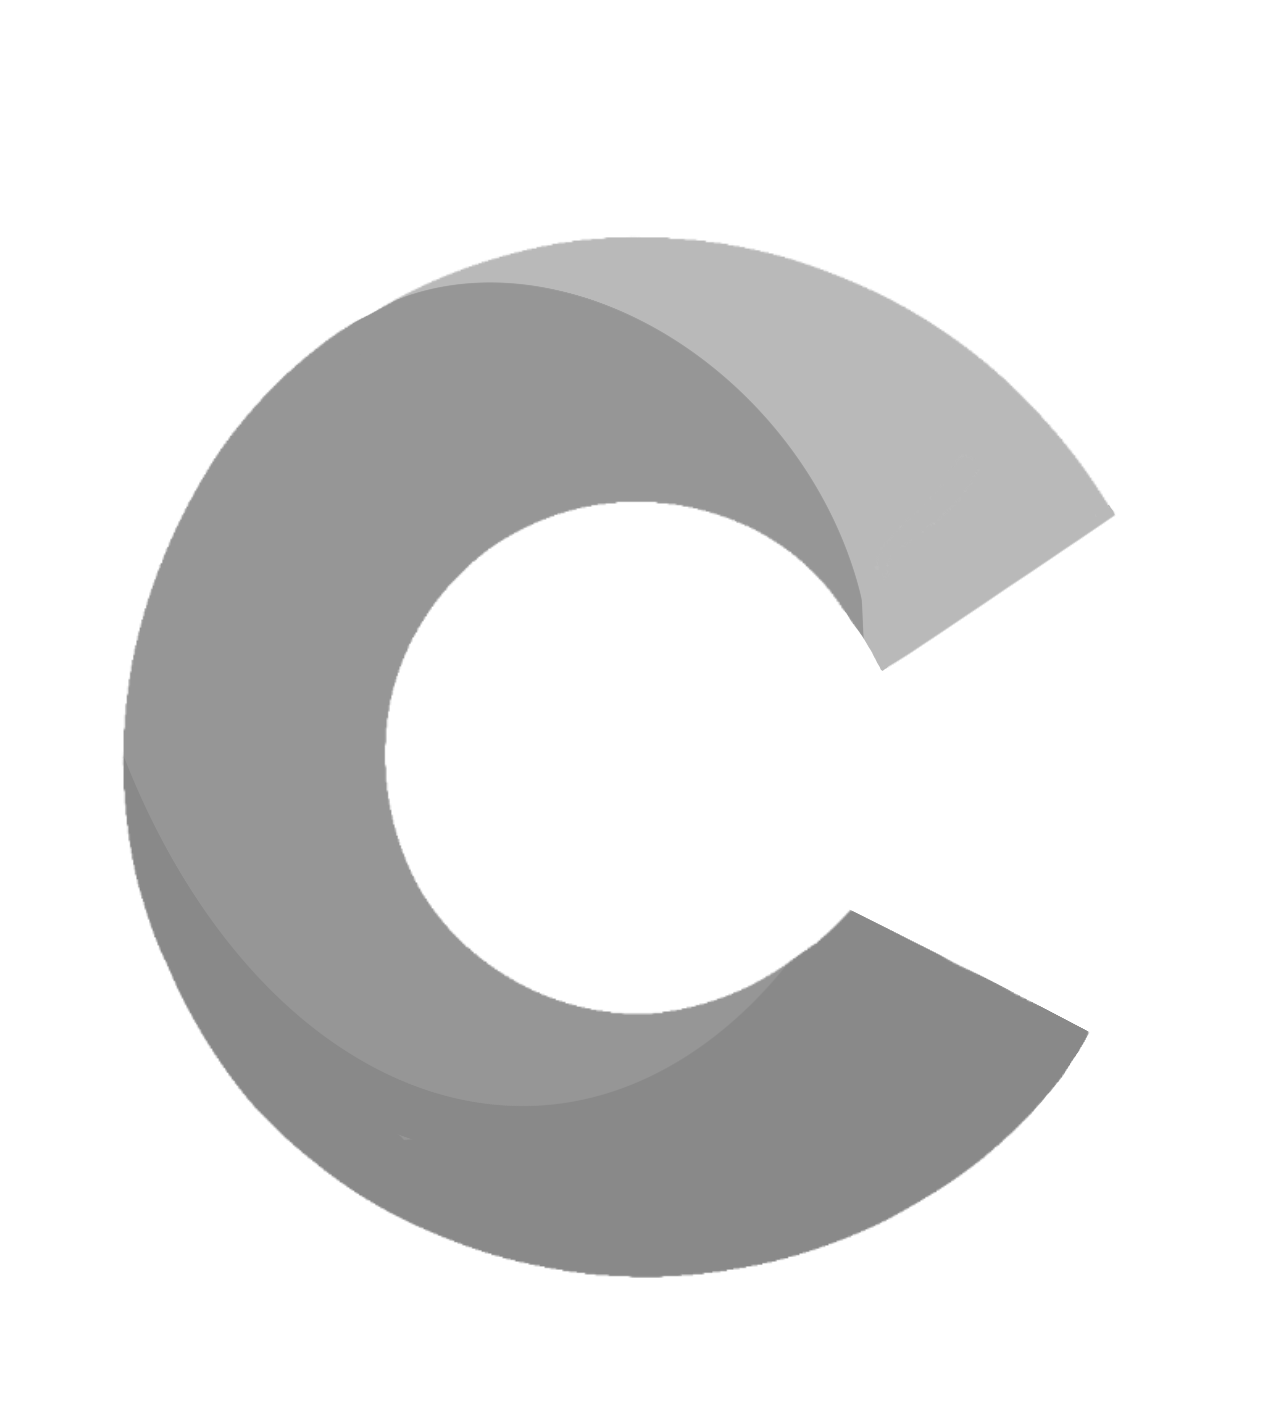 Contus Logo